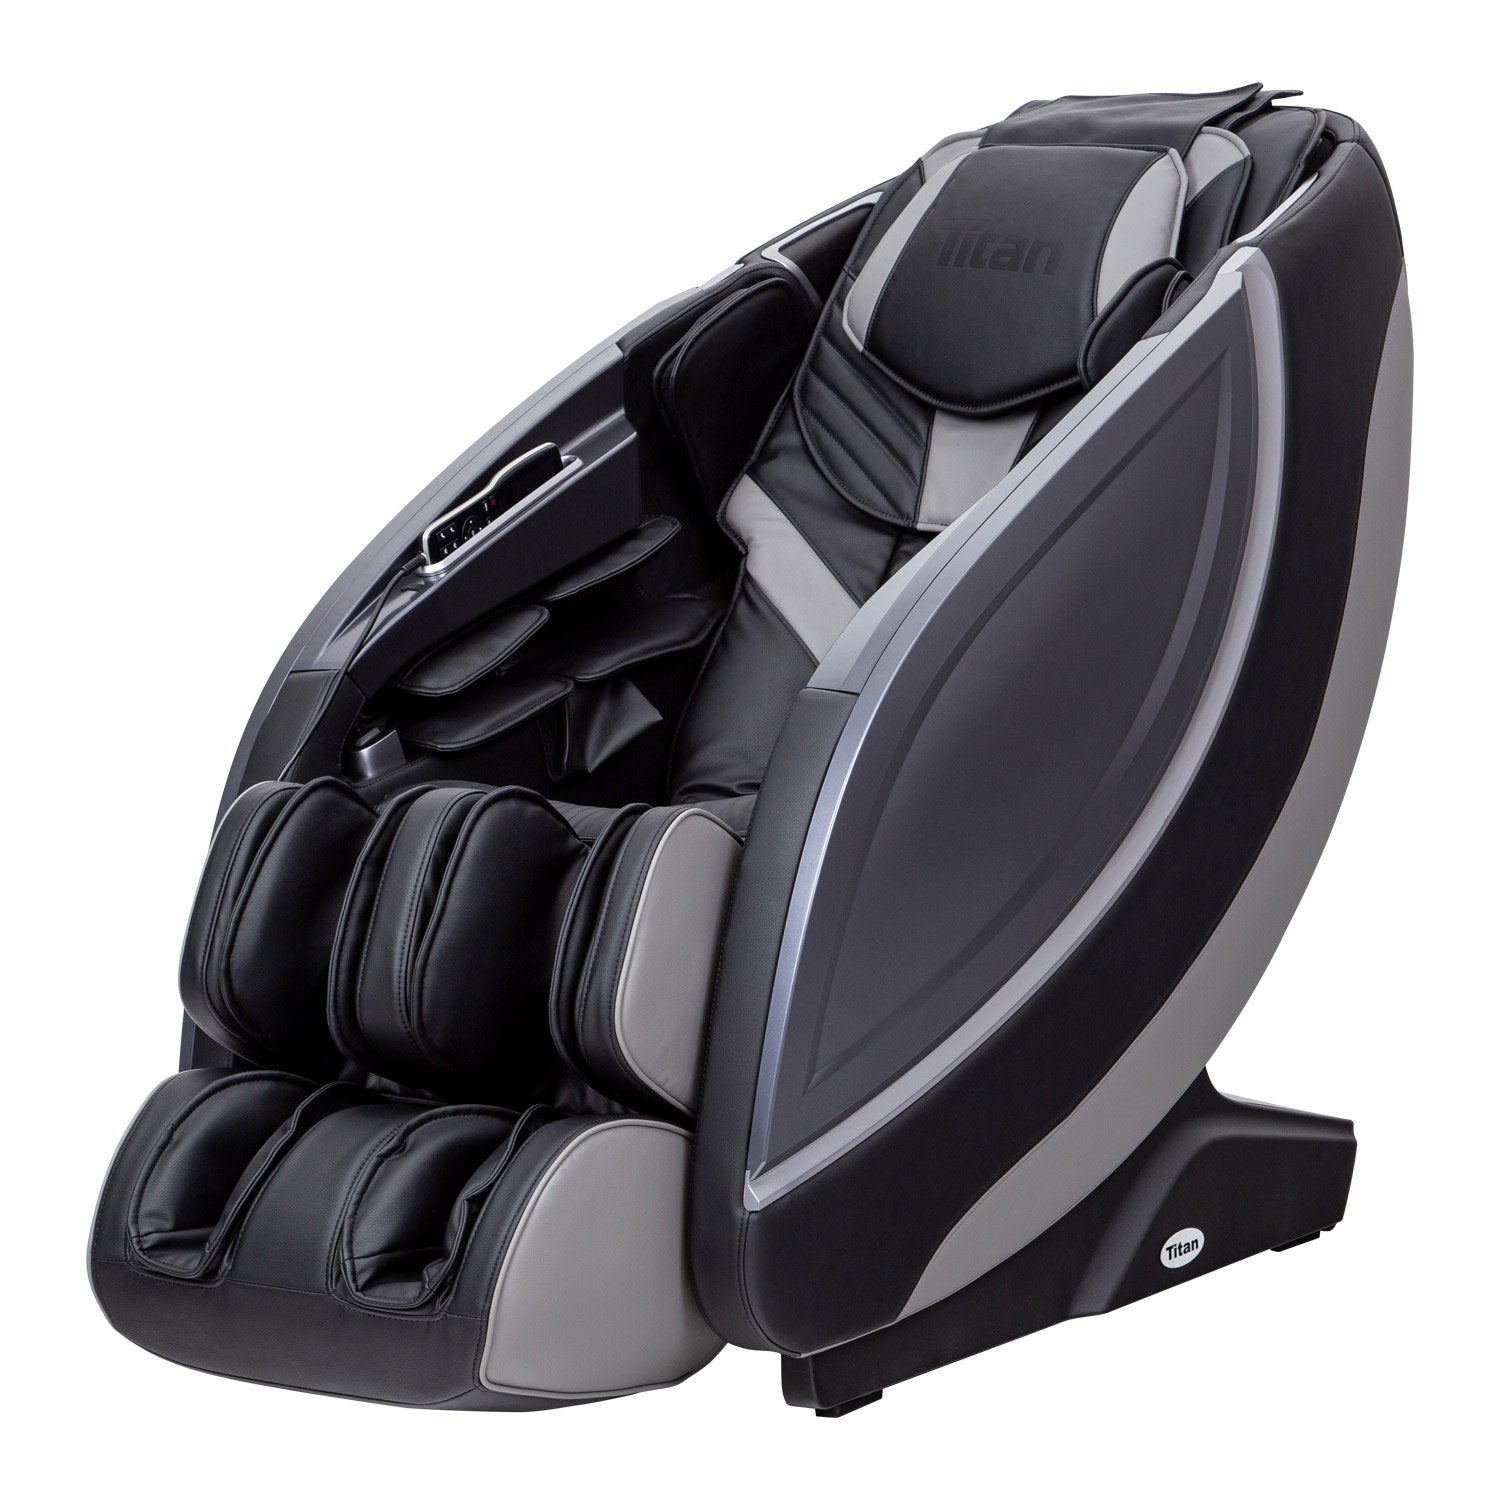 Jin Deluxe L-Track Massage Chair w/ Zero Gravity | Brookstone